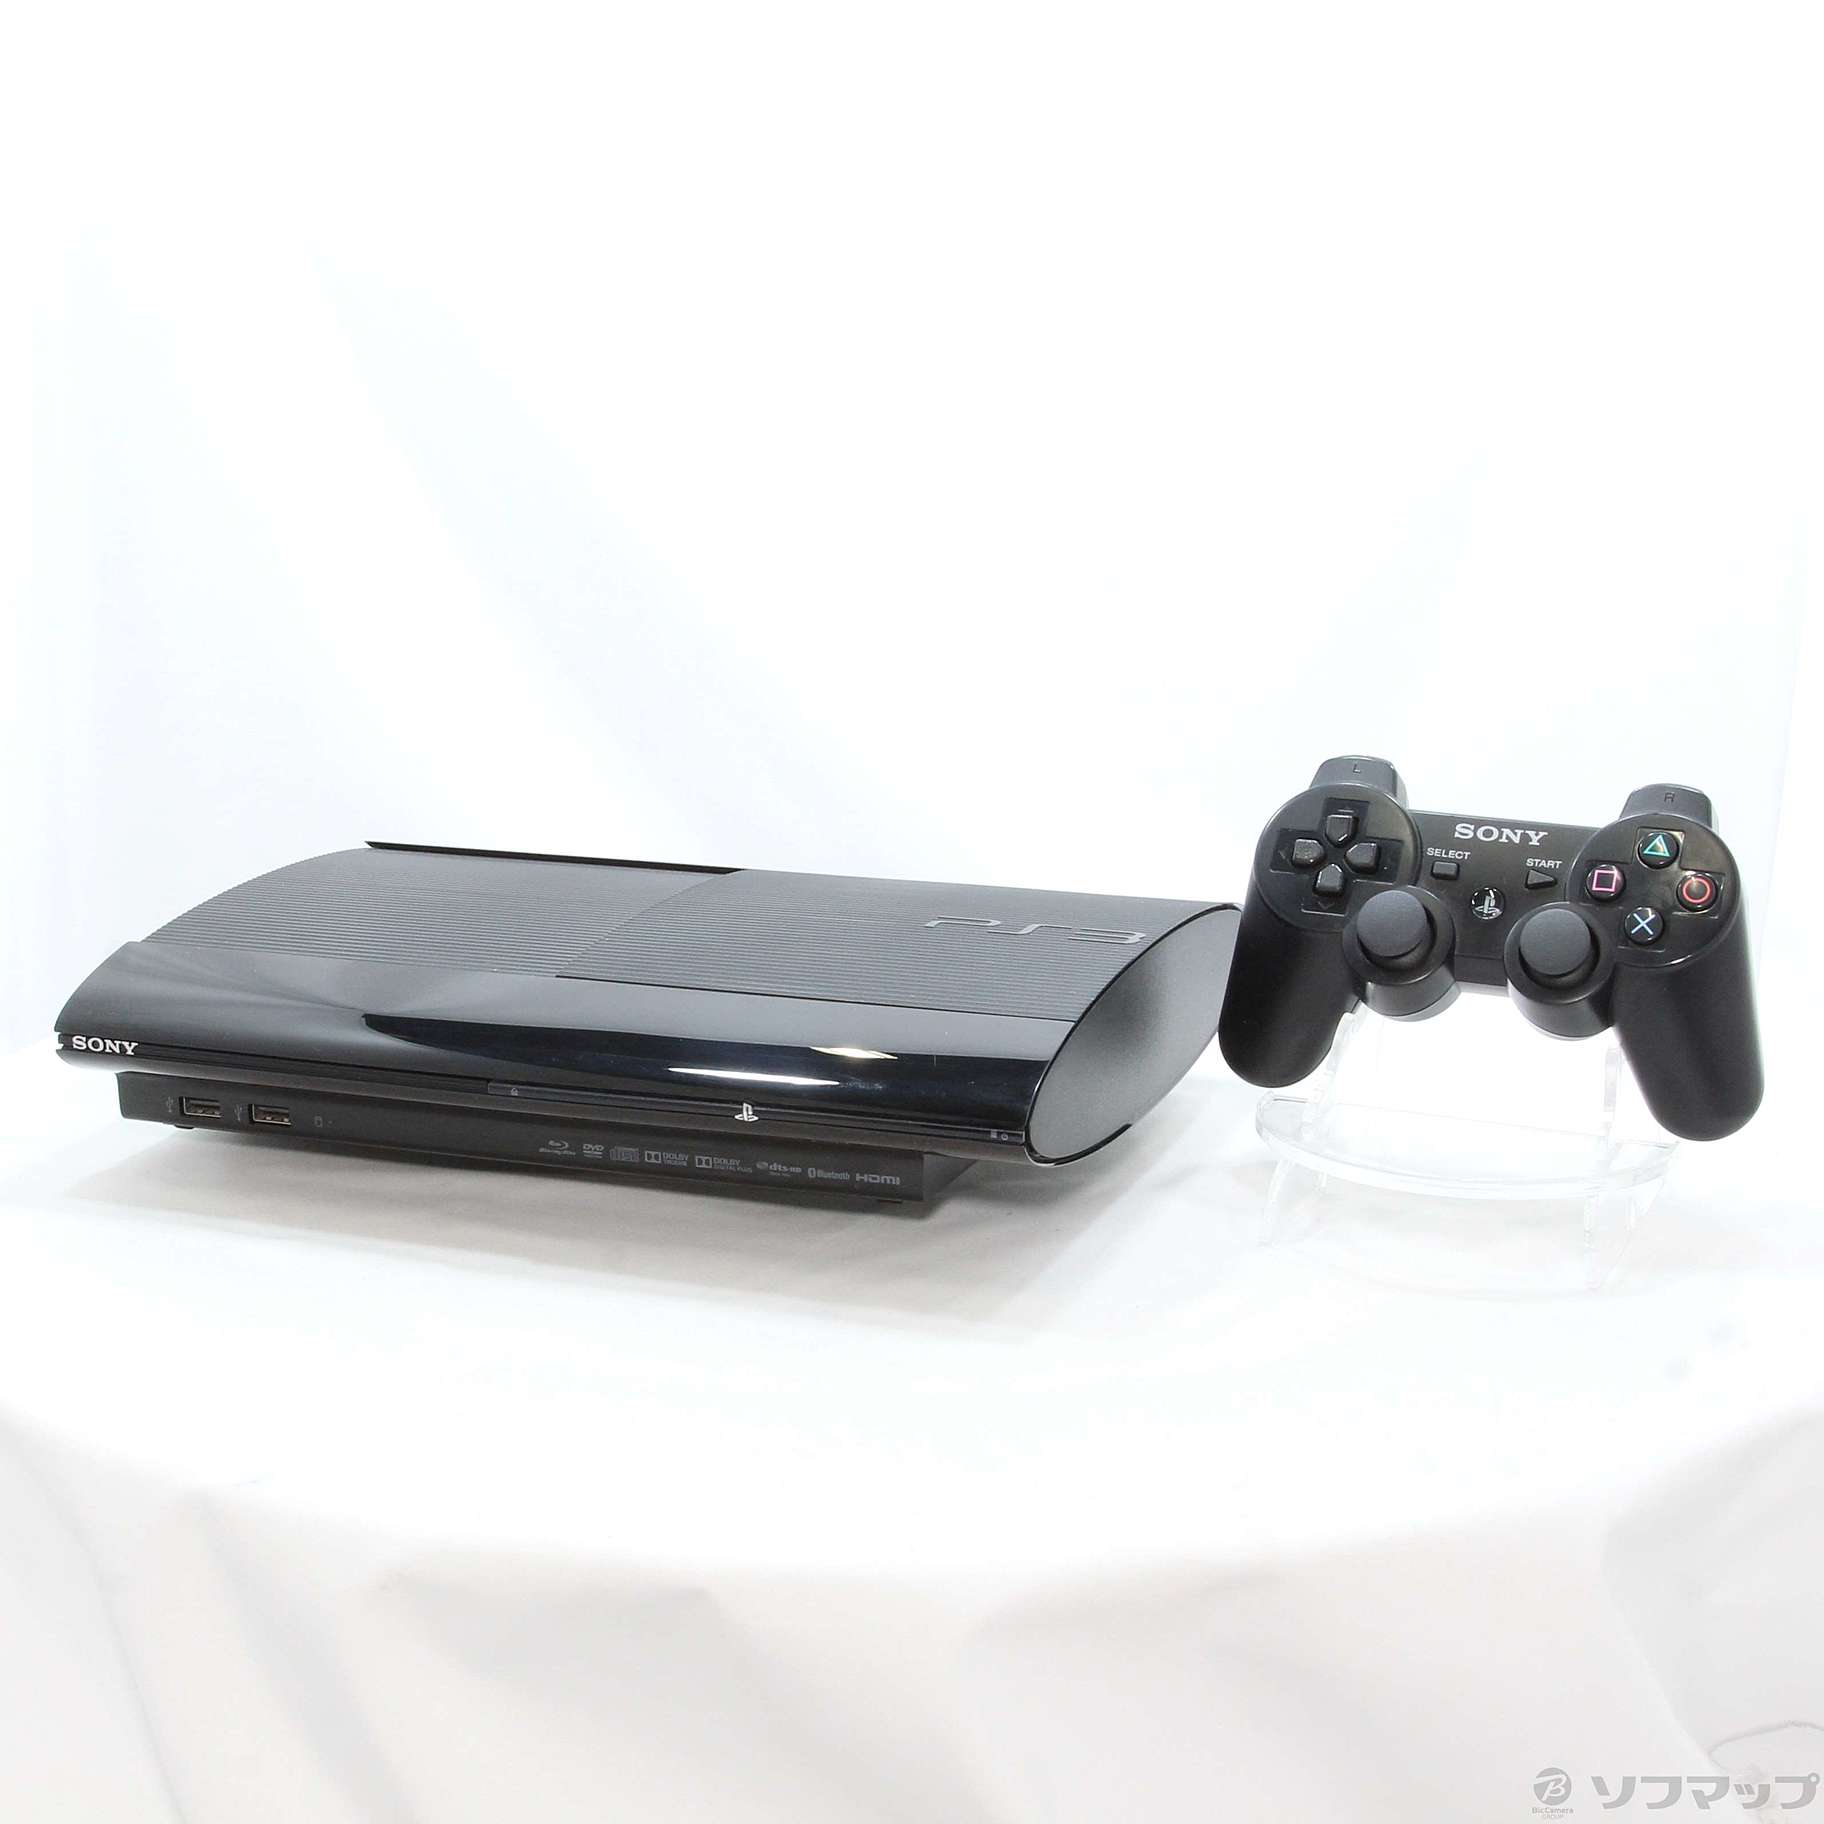 SONY 本体 PlayStation3 CECH-4200C